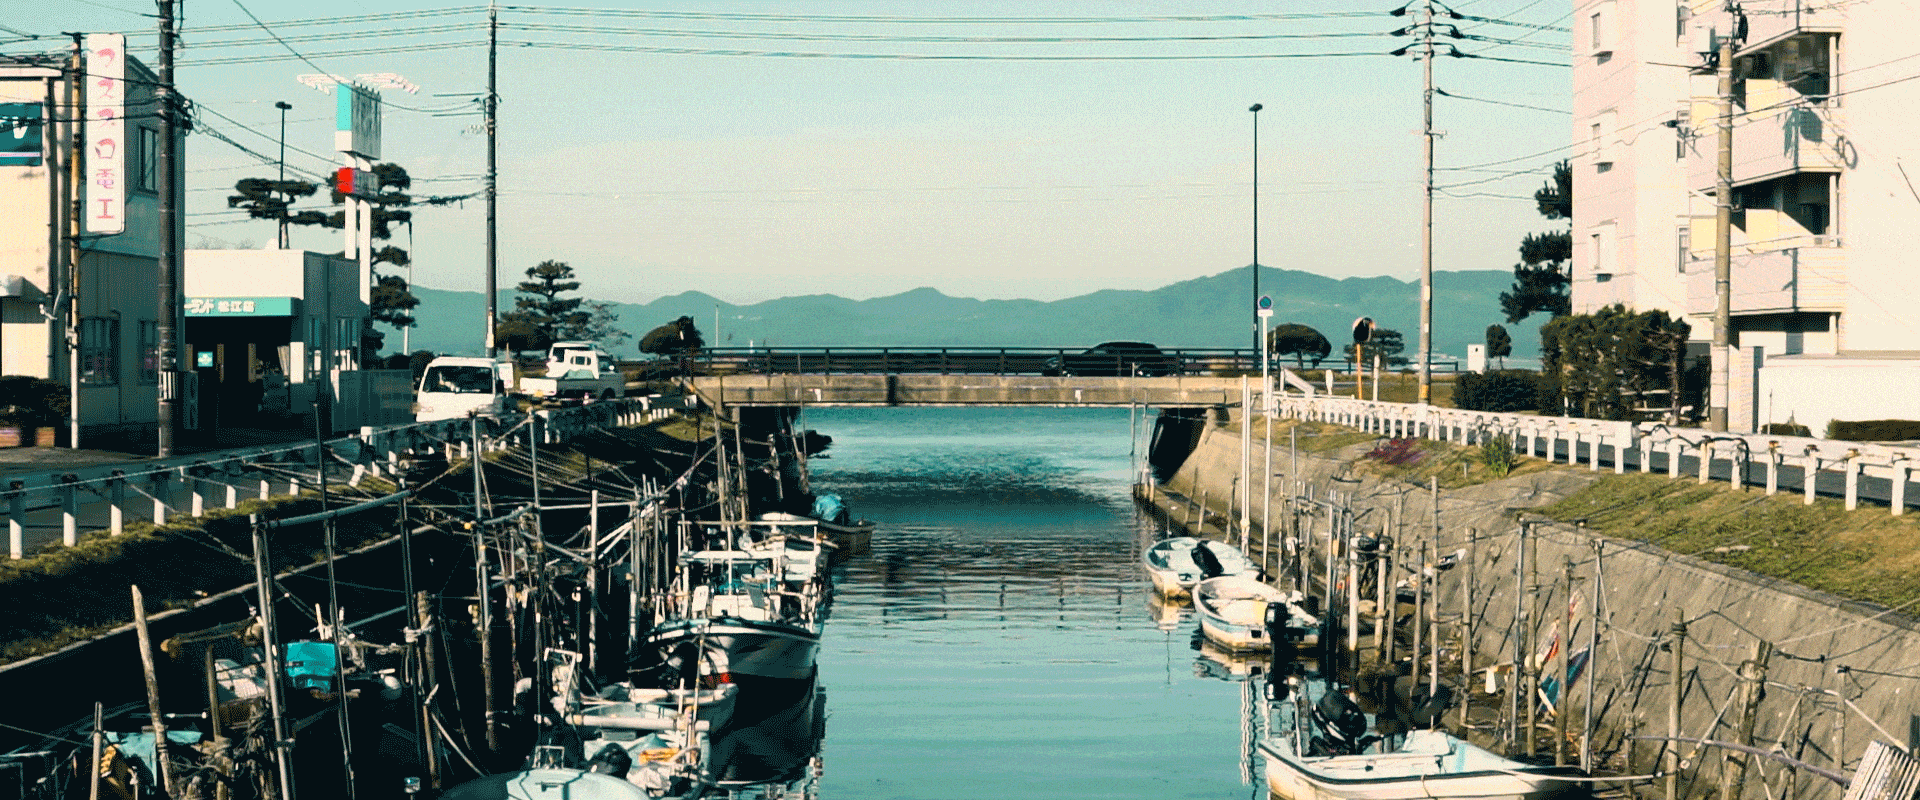 Sankyo river, Nishiyomeshima , Matsue, Shimane, Japan.